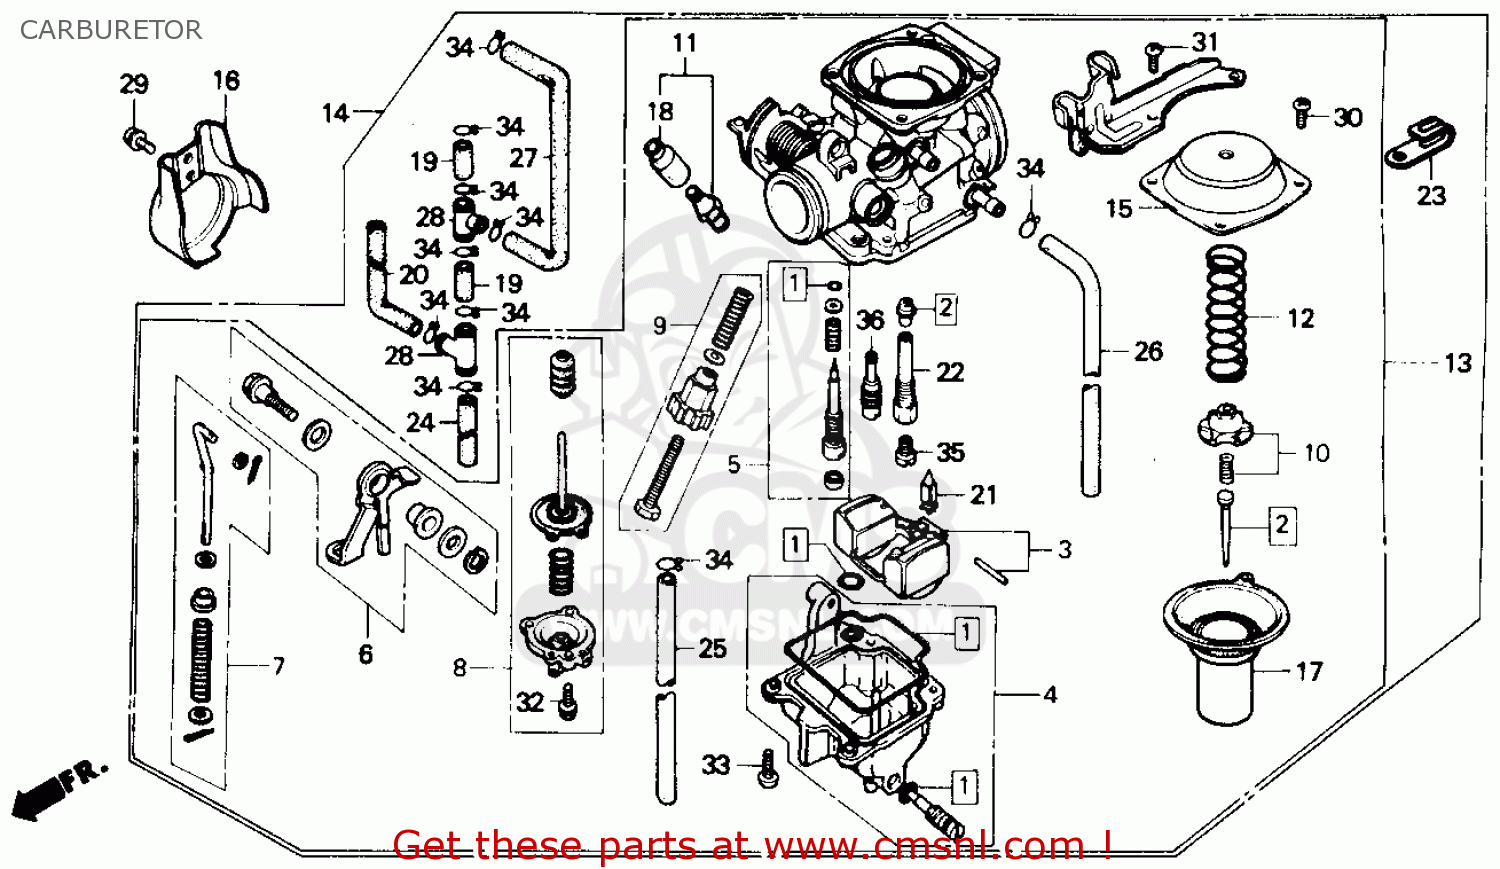 1985 Honda rebel carburetor #5